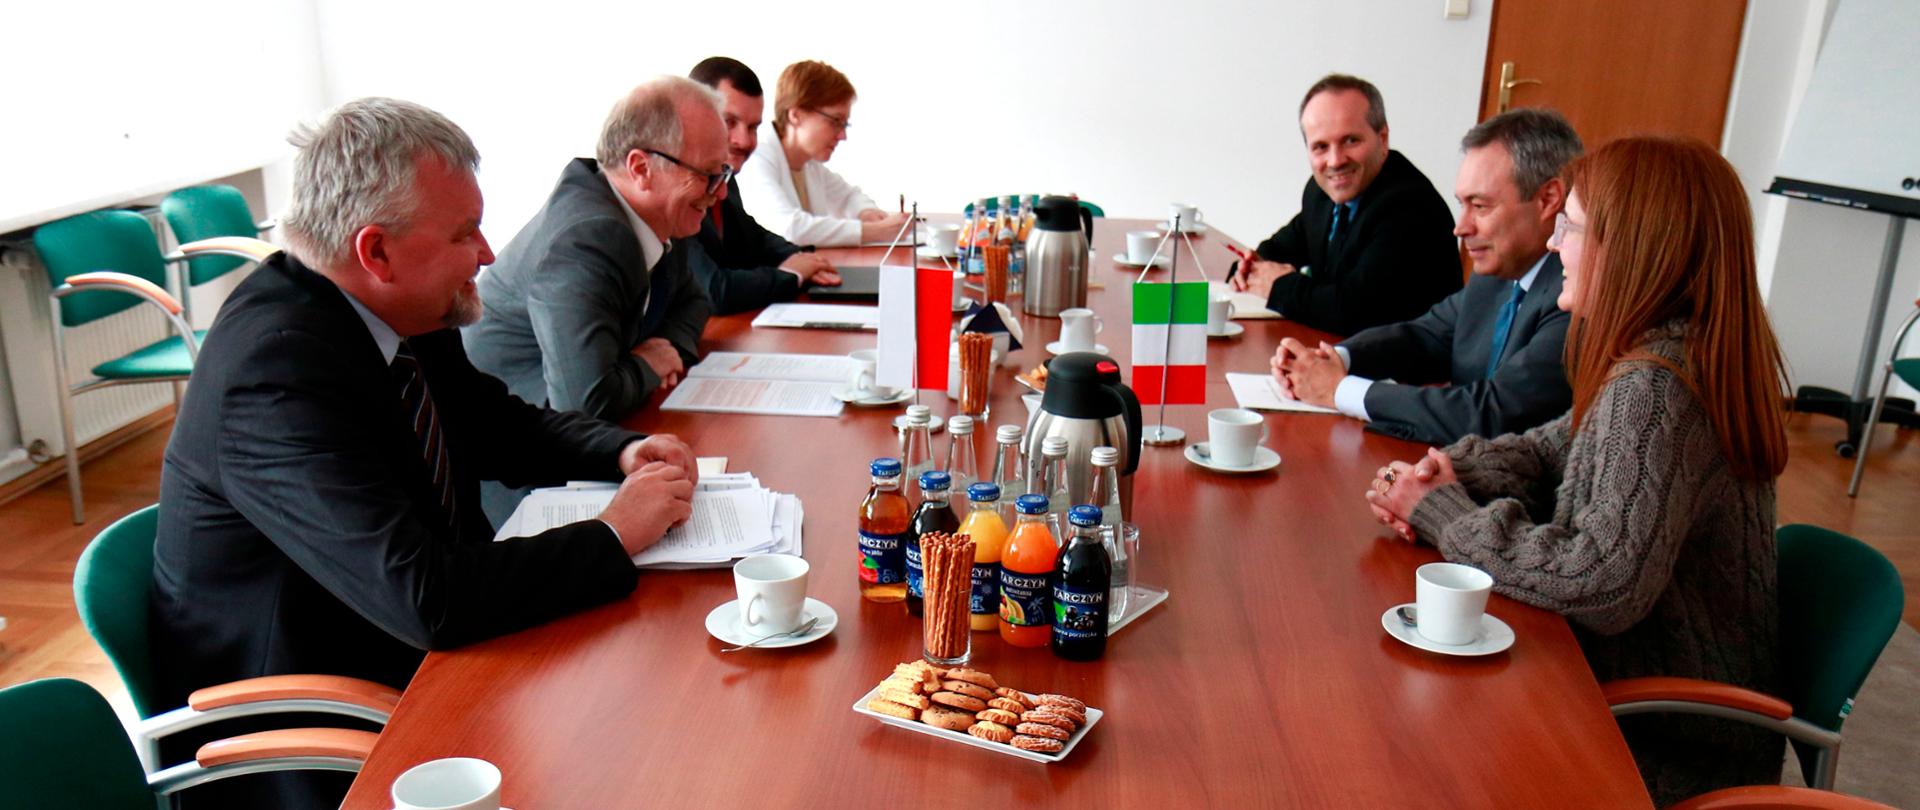 Spotkanie wiceministra M. Chodkiewicza z ambasadorem Włoch A. De Pedysem
